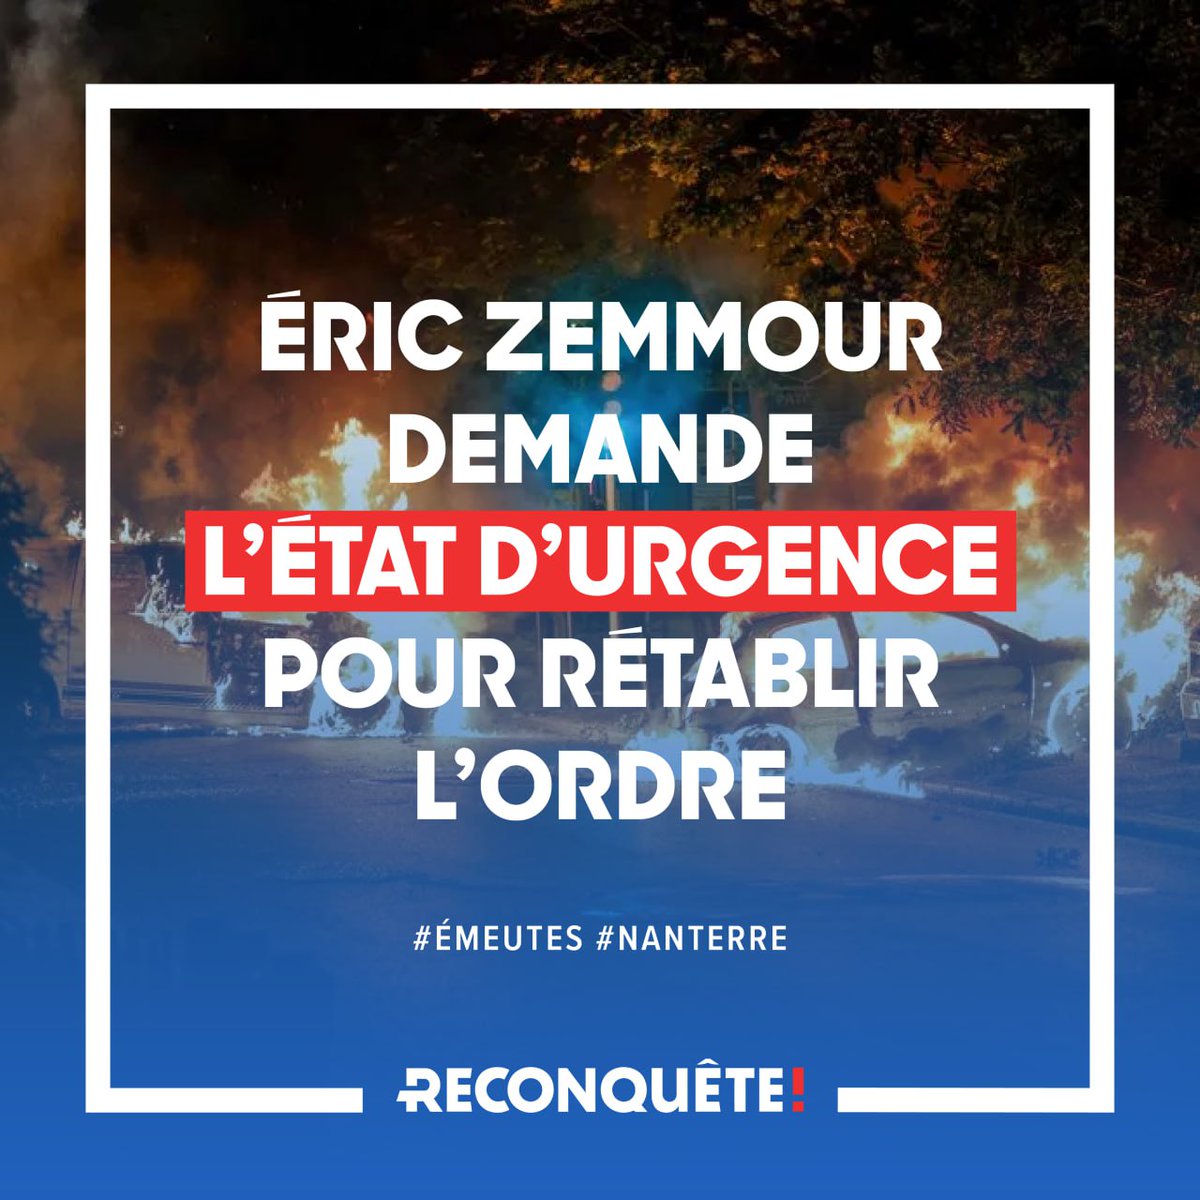 🔴 Eric Zemmour : Je demande l’état d’urgence pour rétablir l’ordre !

#Nanterre #emeutes